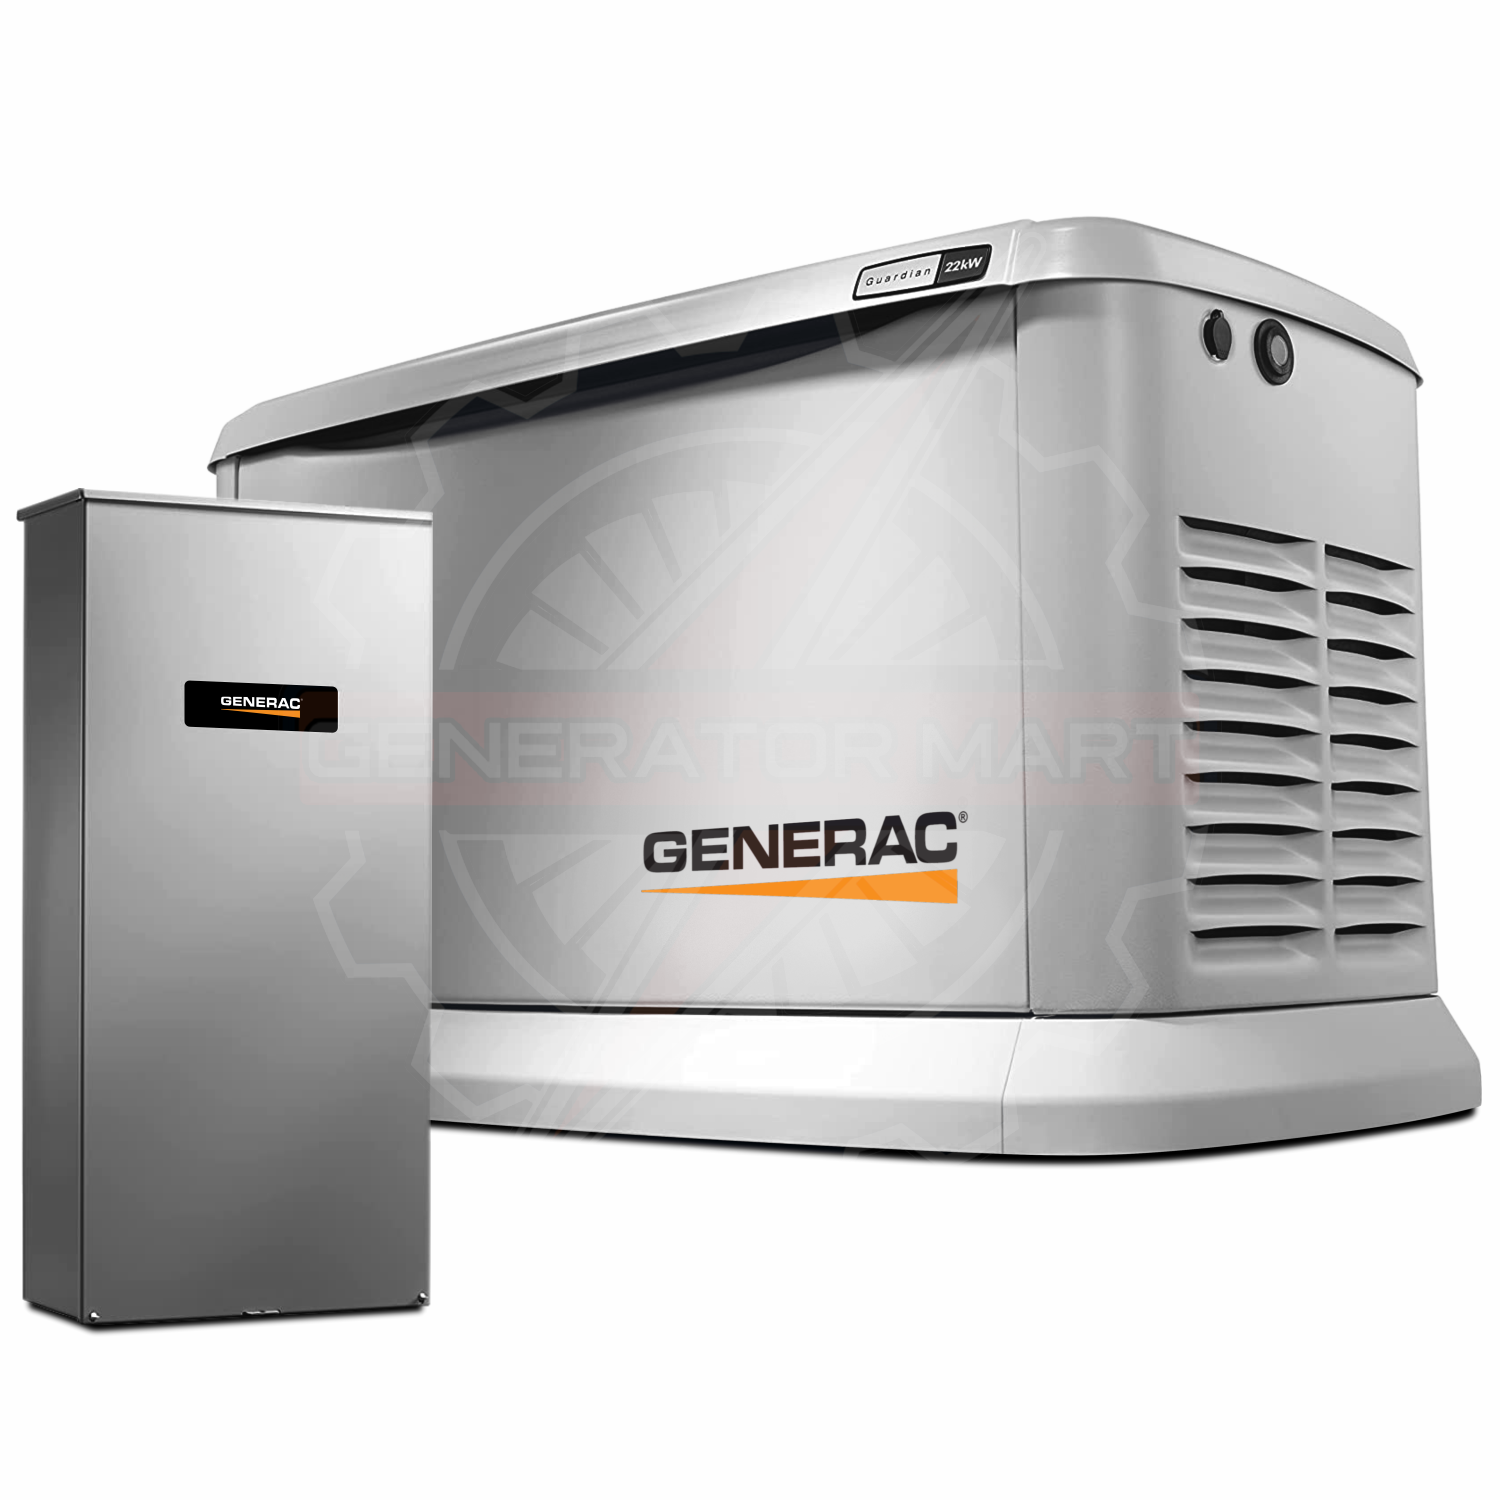 Generac 14kW Standby Generator W/ 200A Transfer Switch- 7225